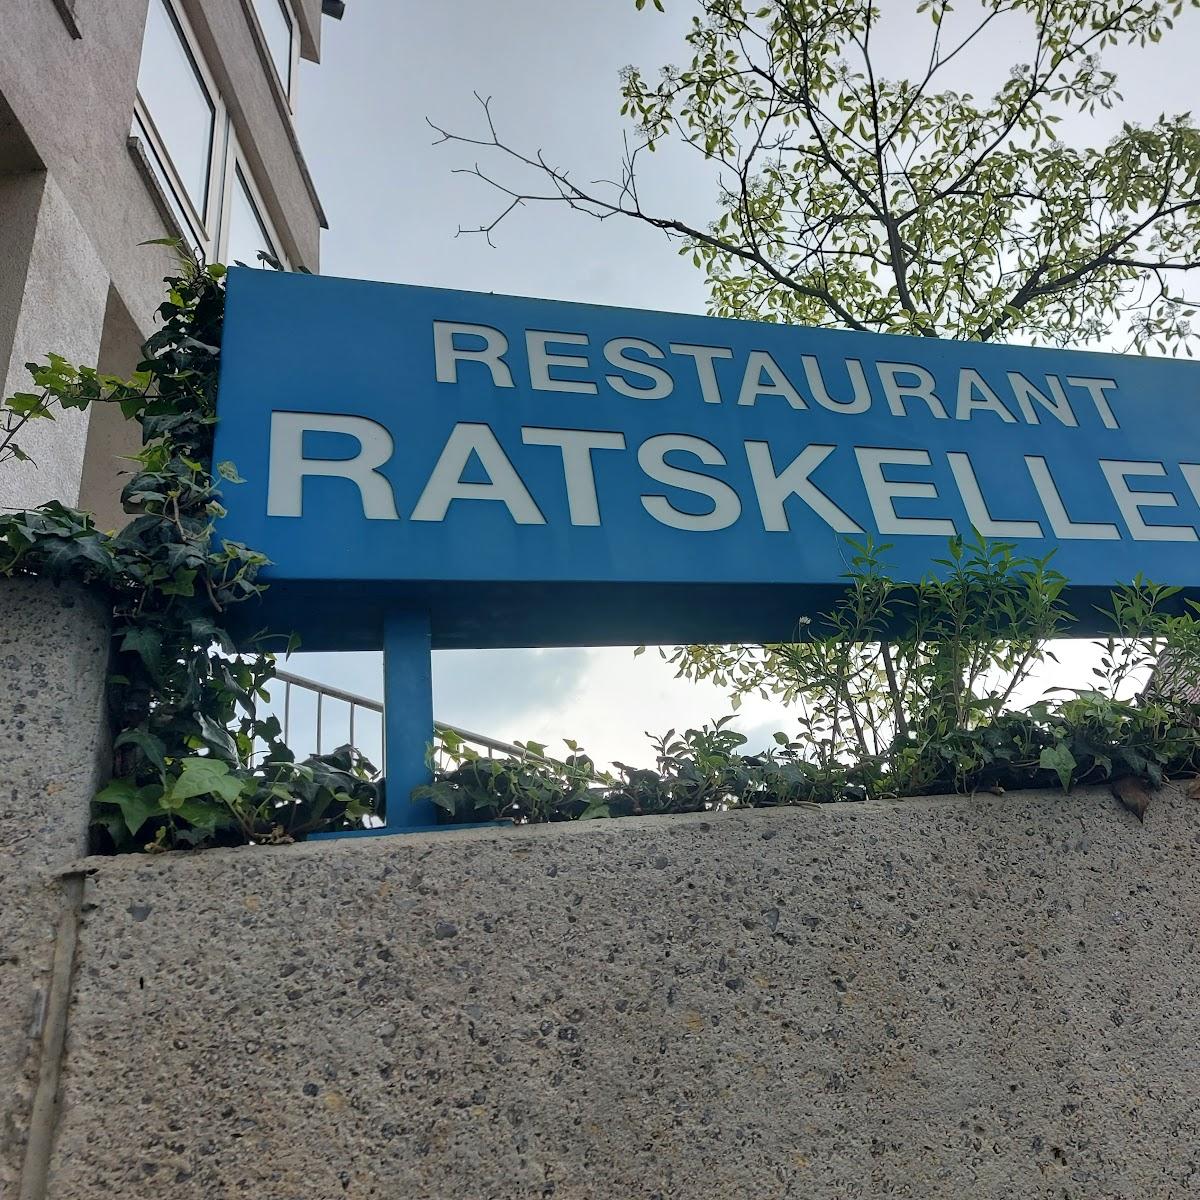 Restaurant "Ratskeller" in Ditzingen